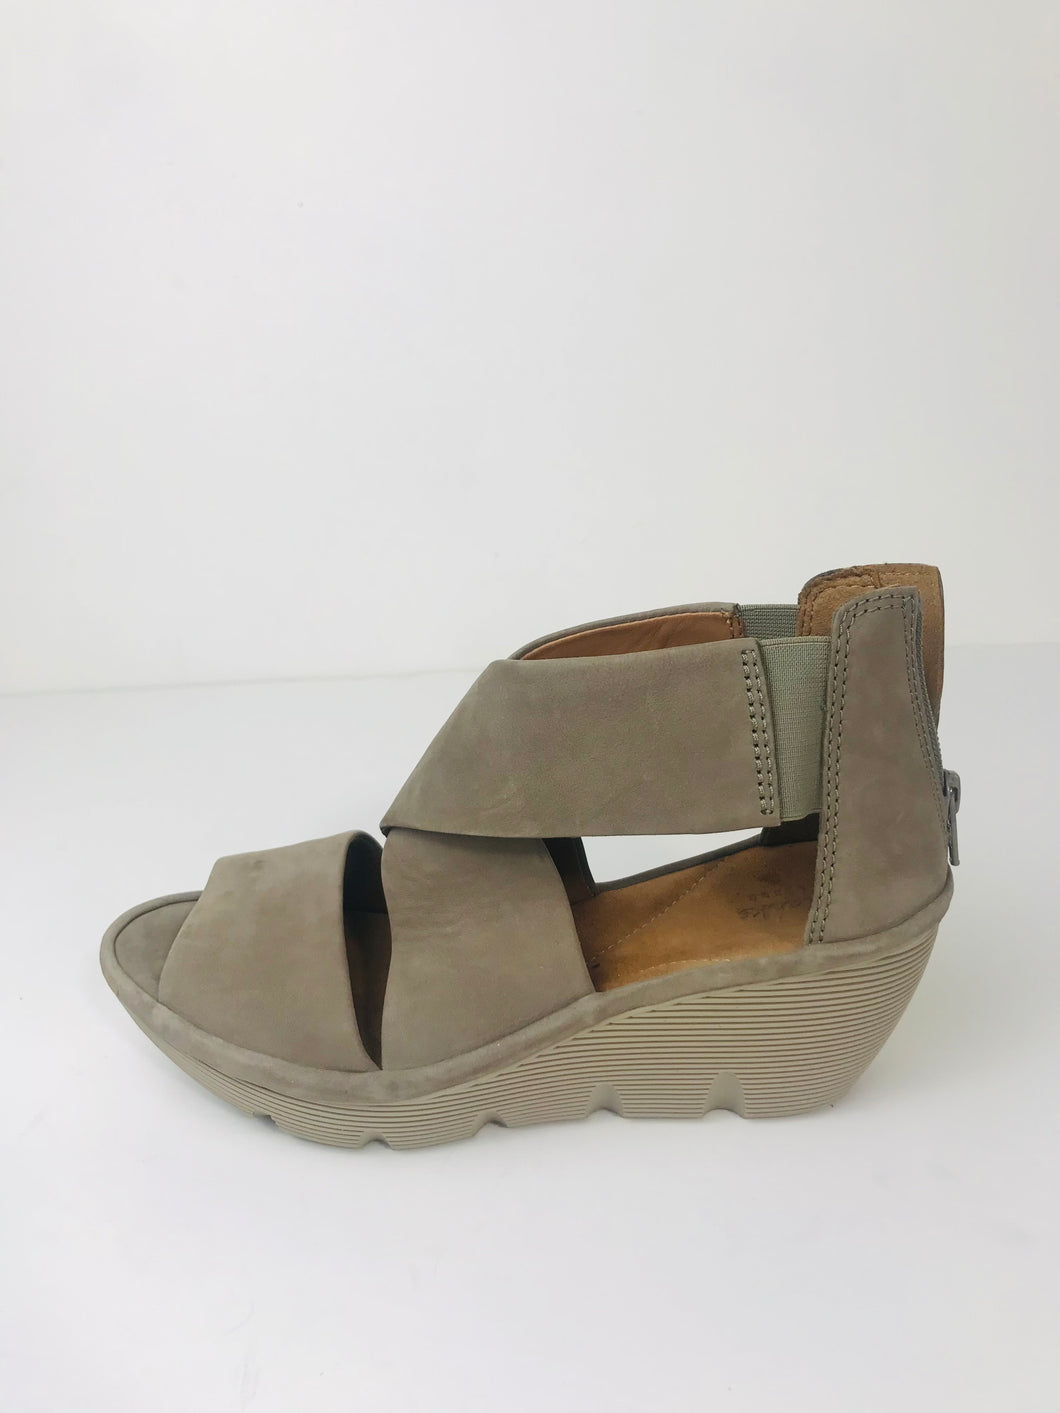 Clarks Women's Suede Wedge Sandals | UK5.5 | Grey